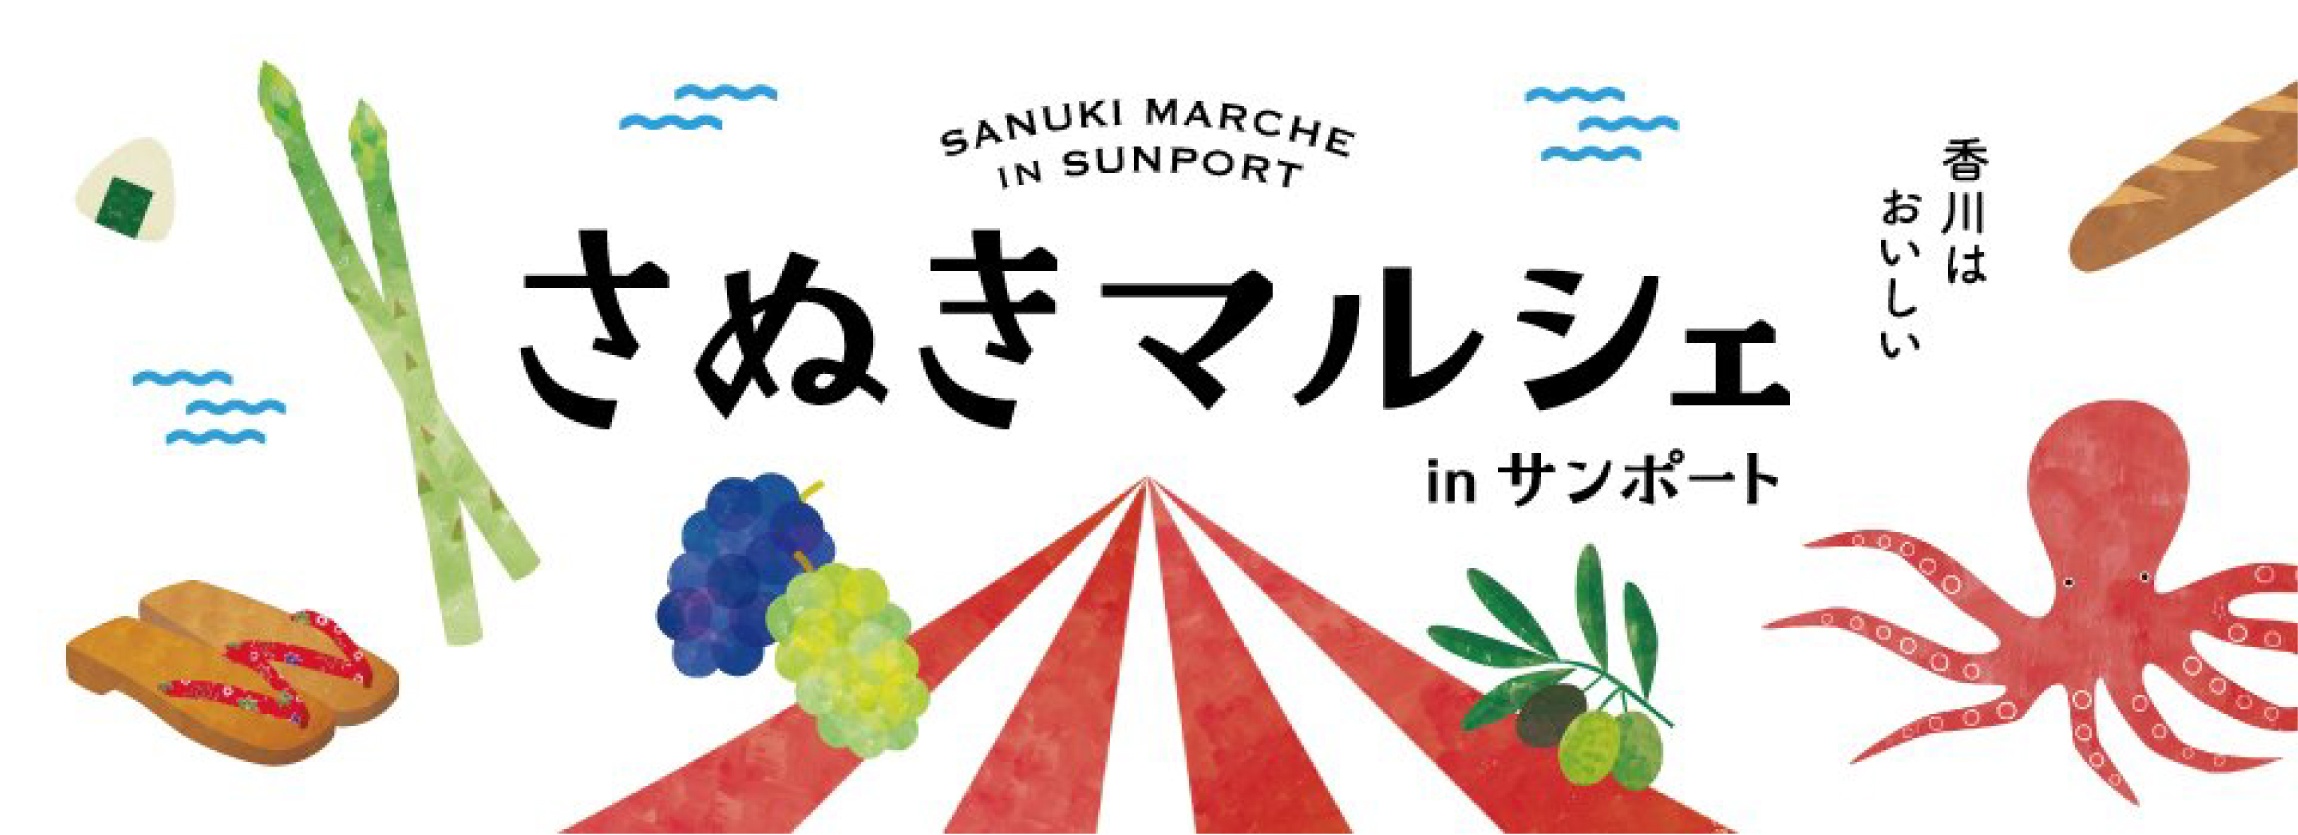 SUNPORT的SANUKI MARCHE香川县Sunport的Sanuki Marche美味